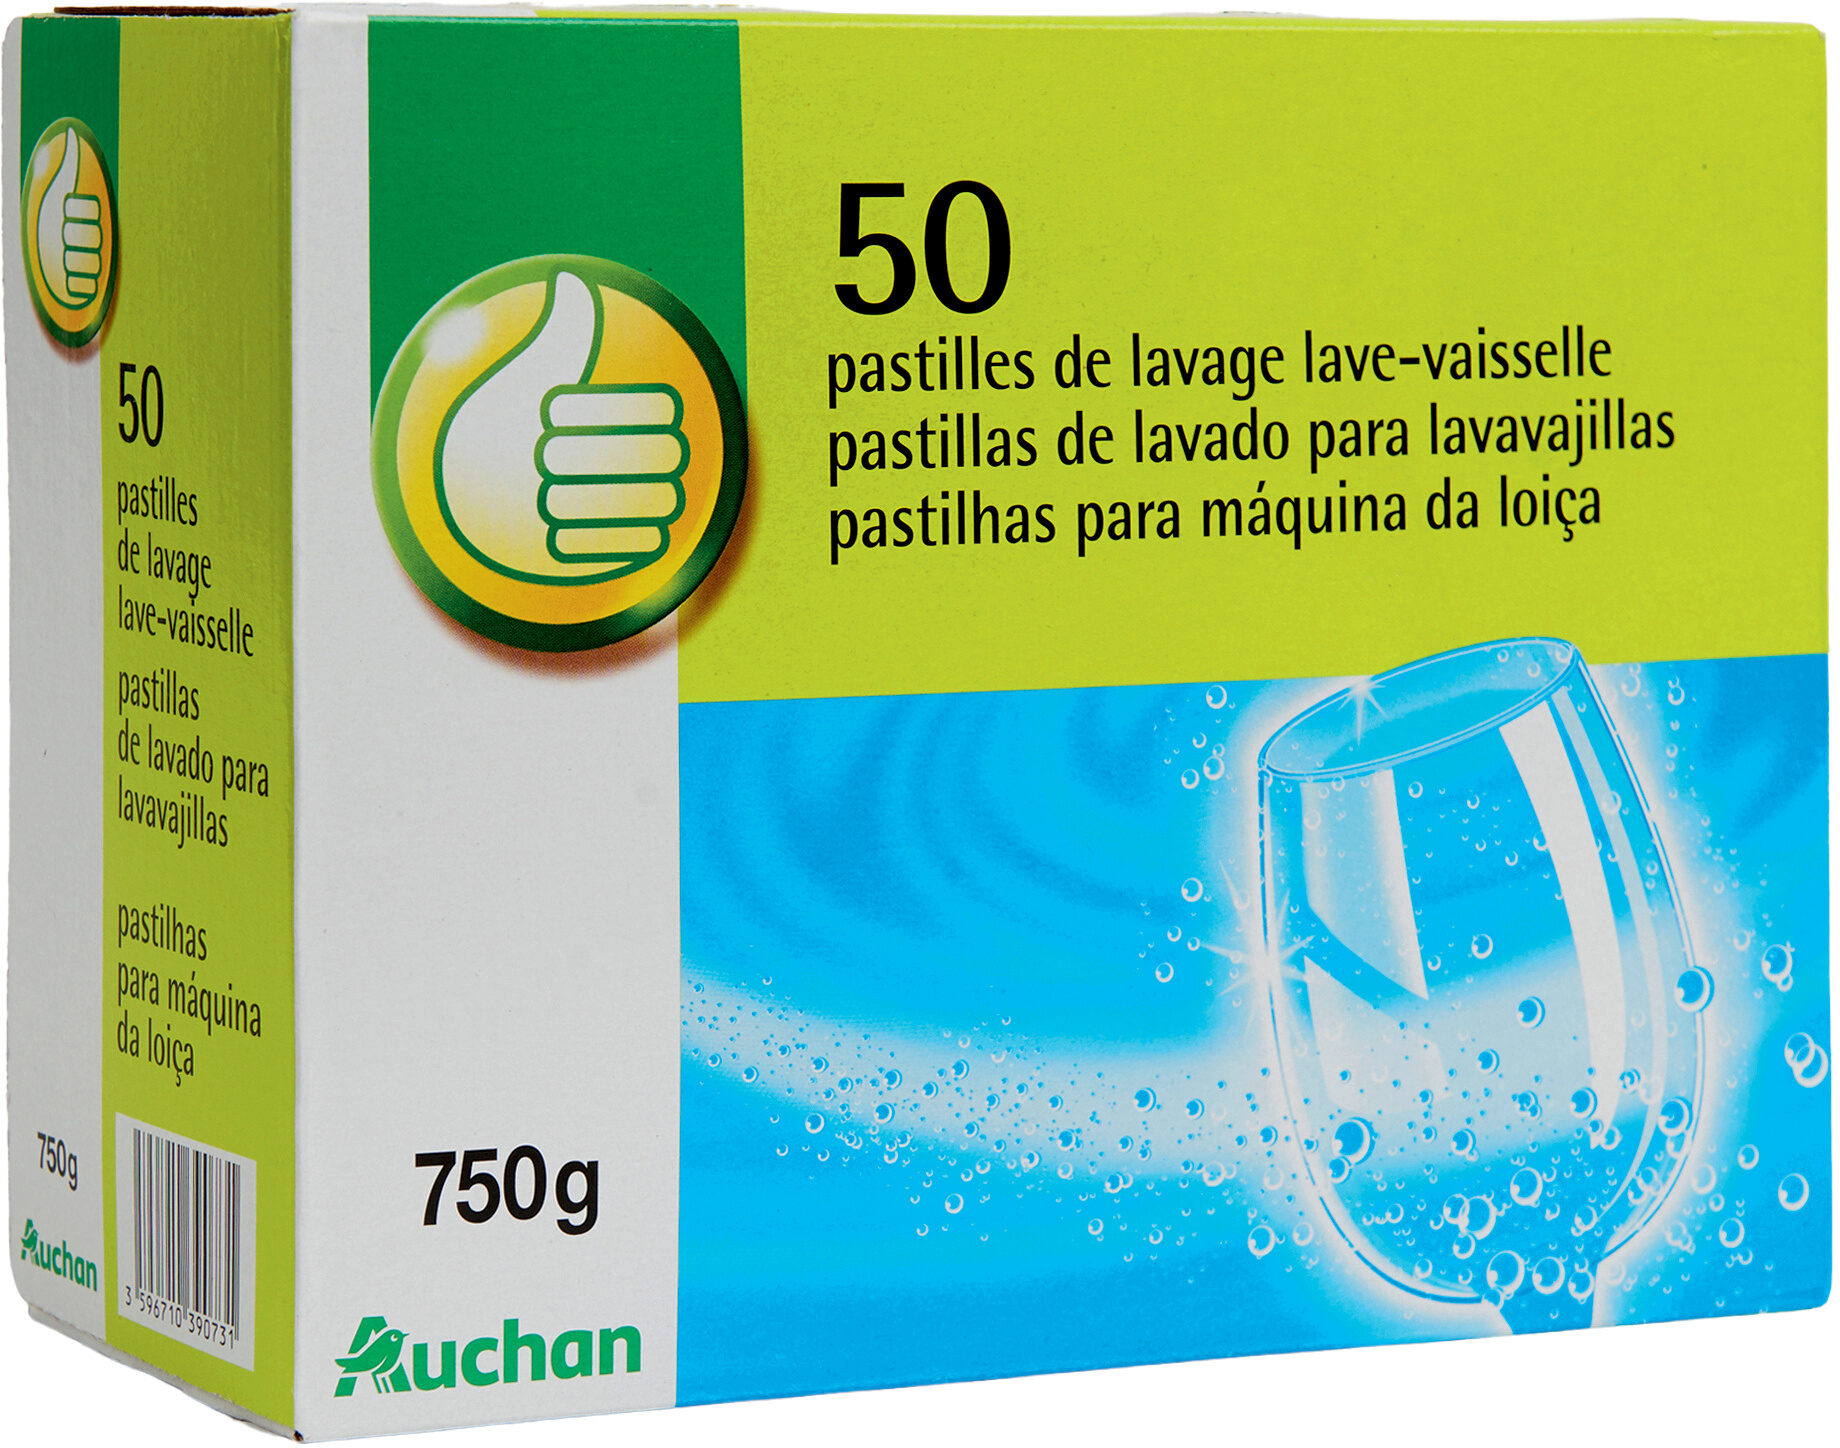 50 pastilles de lavage lave-vaisselle - Produit - fr